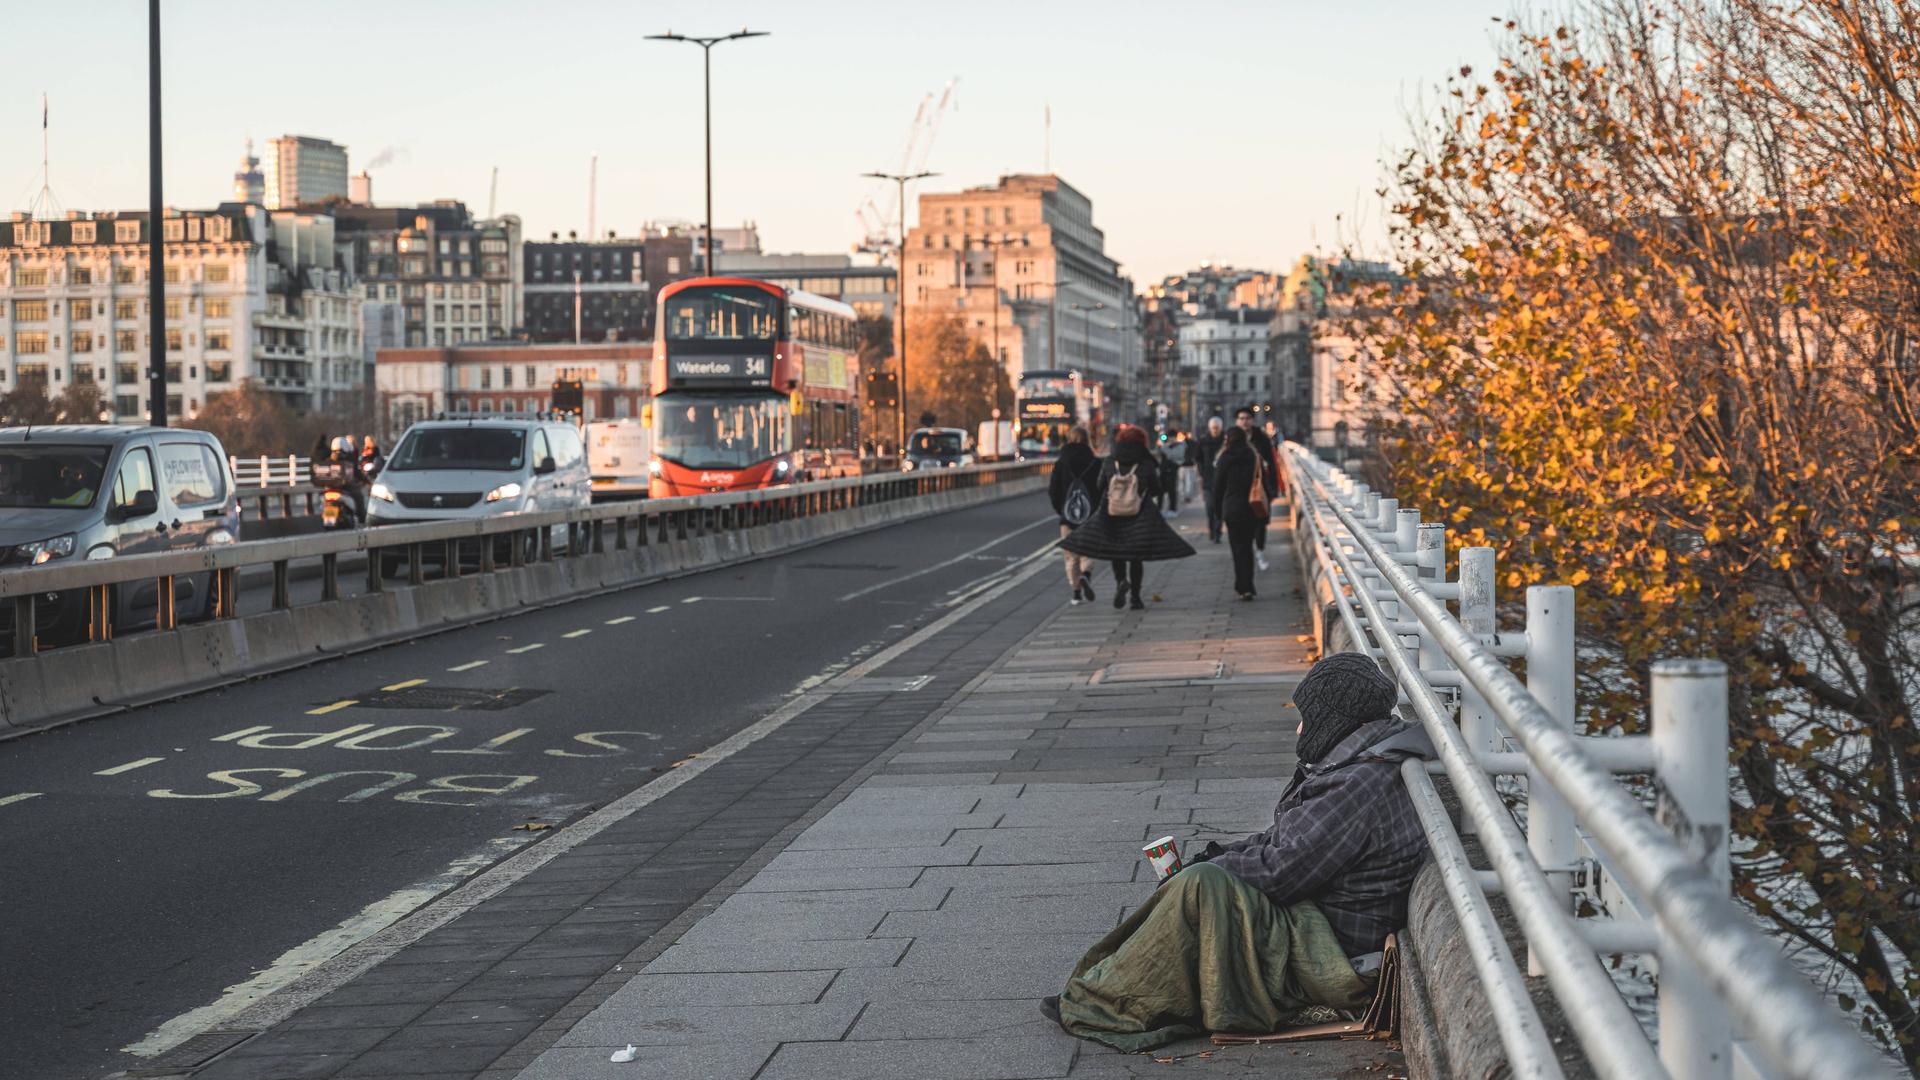 Großbritannien, London: Ein Bettler sitzt auf einer Brücke mit einem Becher für Kleingeld. Er ist dick eingepackt mit Mütze und Decke, im Hintergrund sind Passanten und der fließende Verkehr zu sehen.